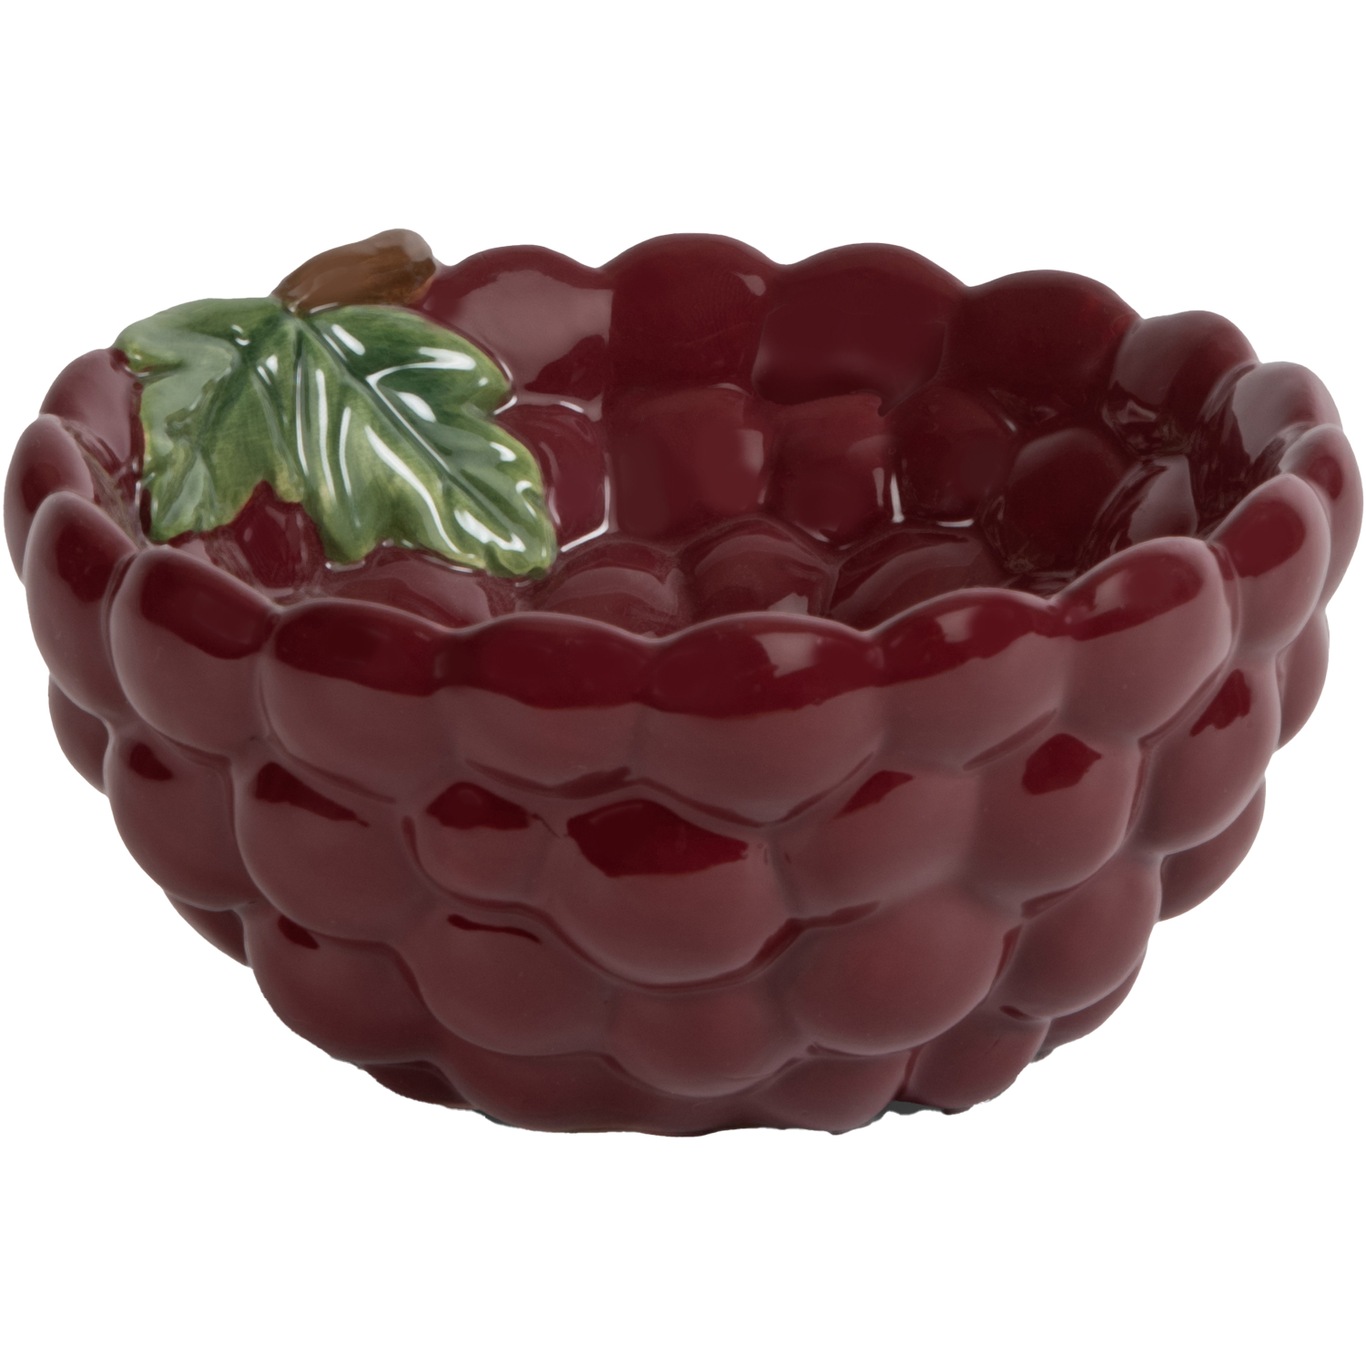 Grape Bowl, 7 cm